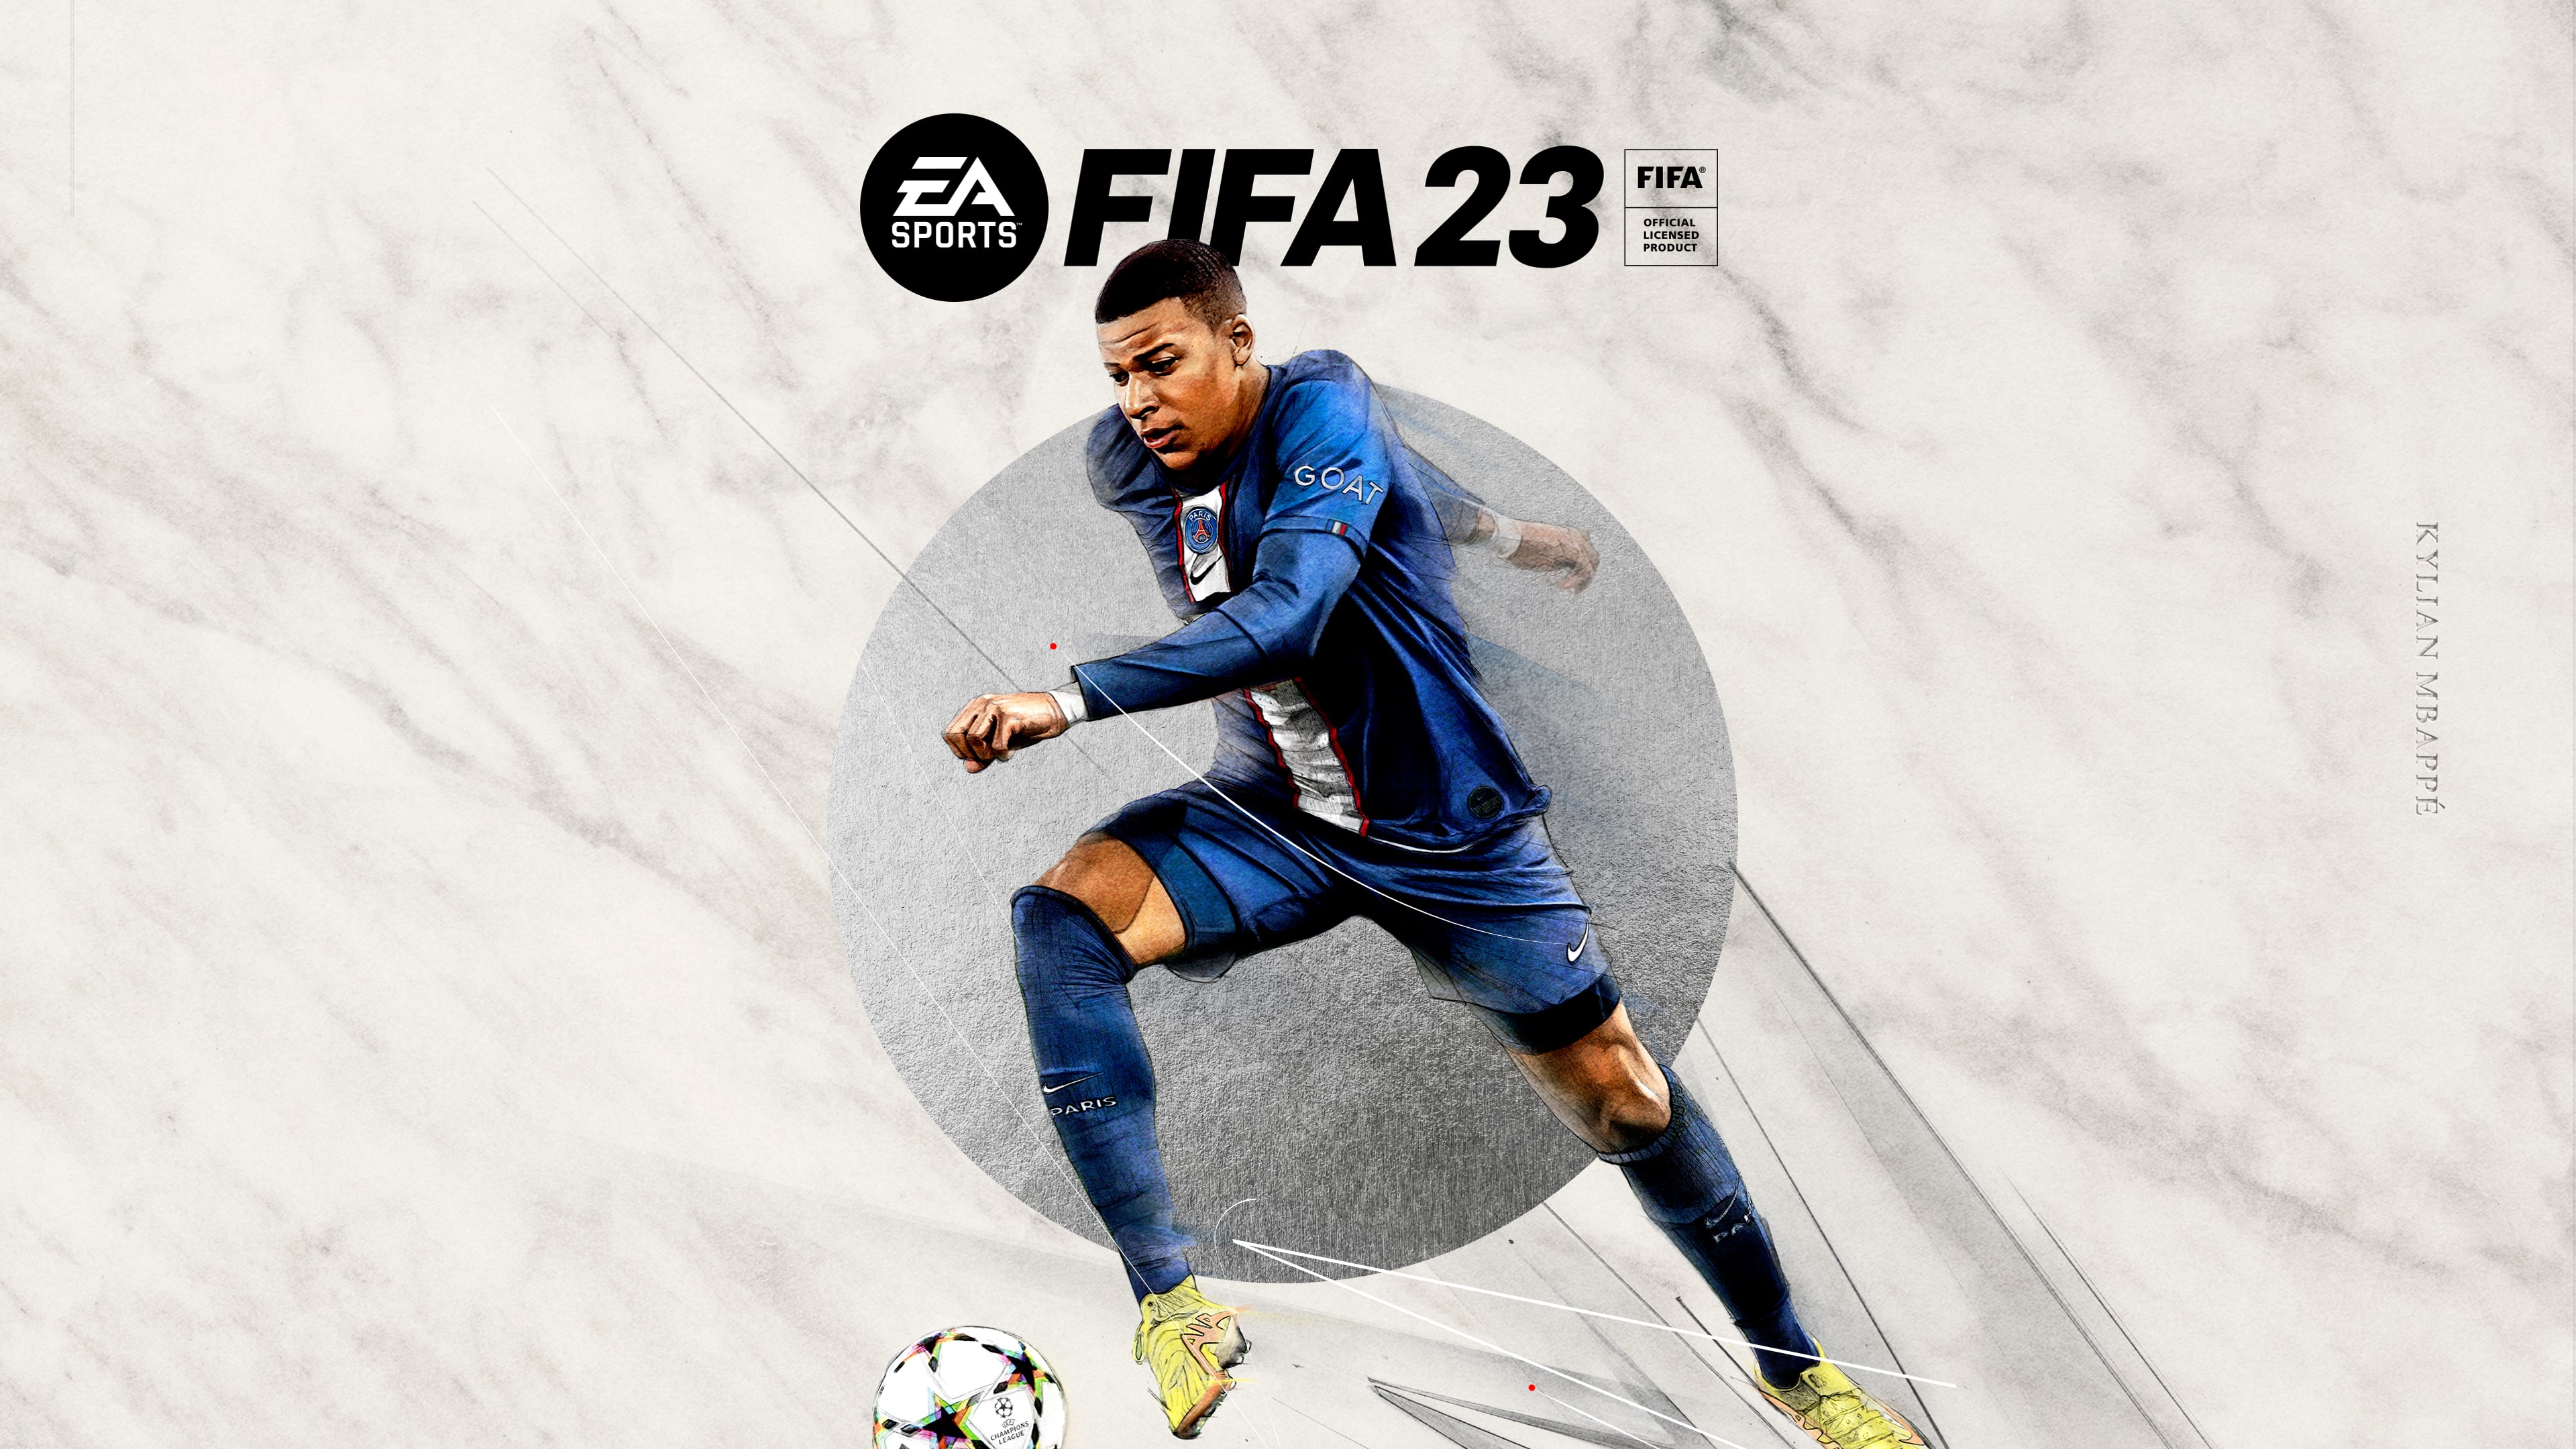 EA SPORTS FIFA 23 - PS4 & PS5 Games | PlayStation (US)